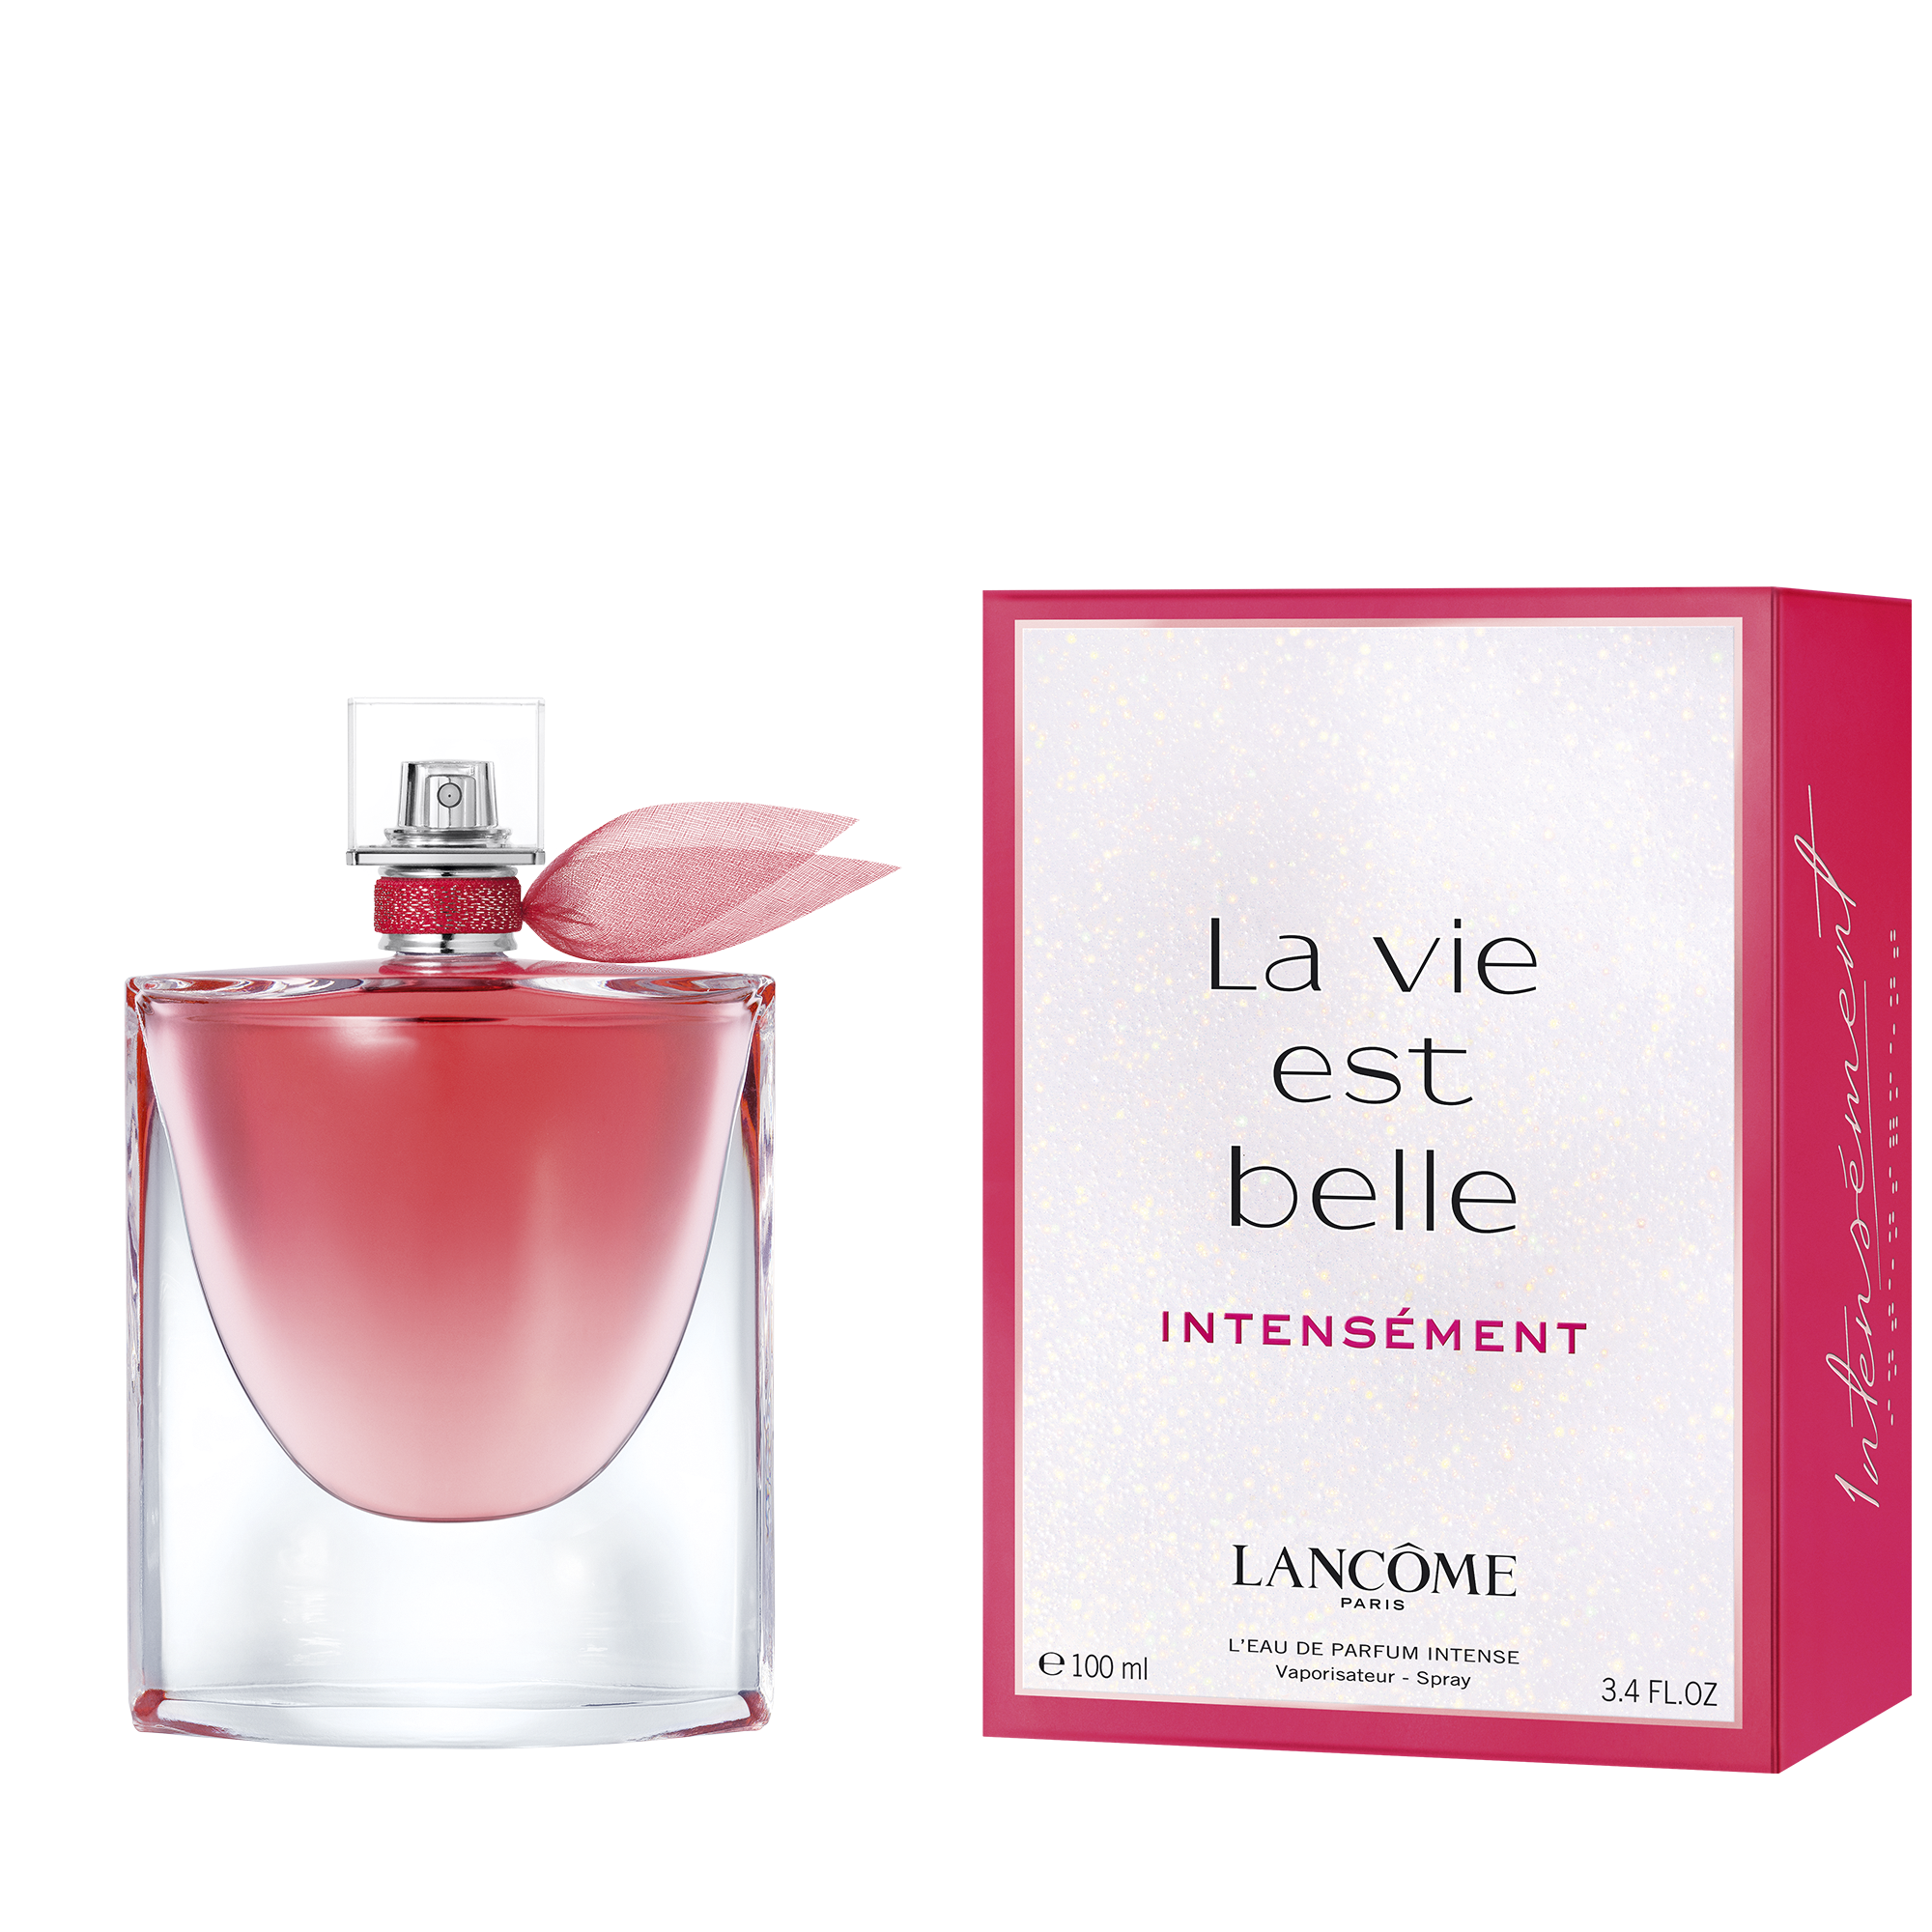 La Vie Est Belle, el icónico Eau de Parfum de Lancôme, llega con una nueva intensidad